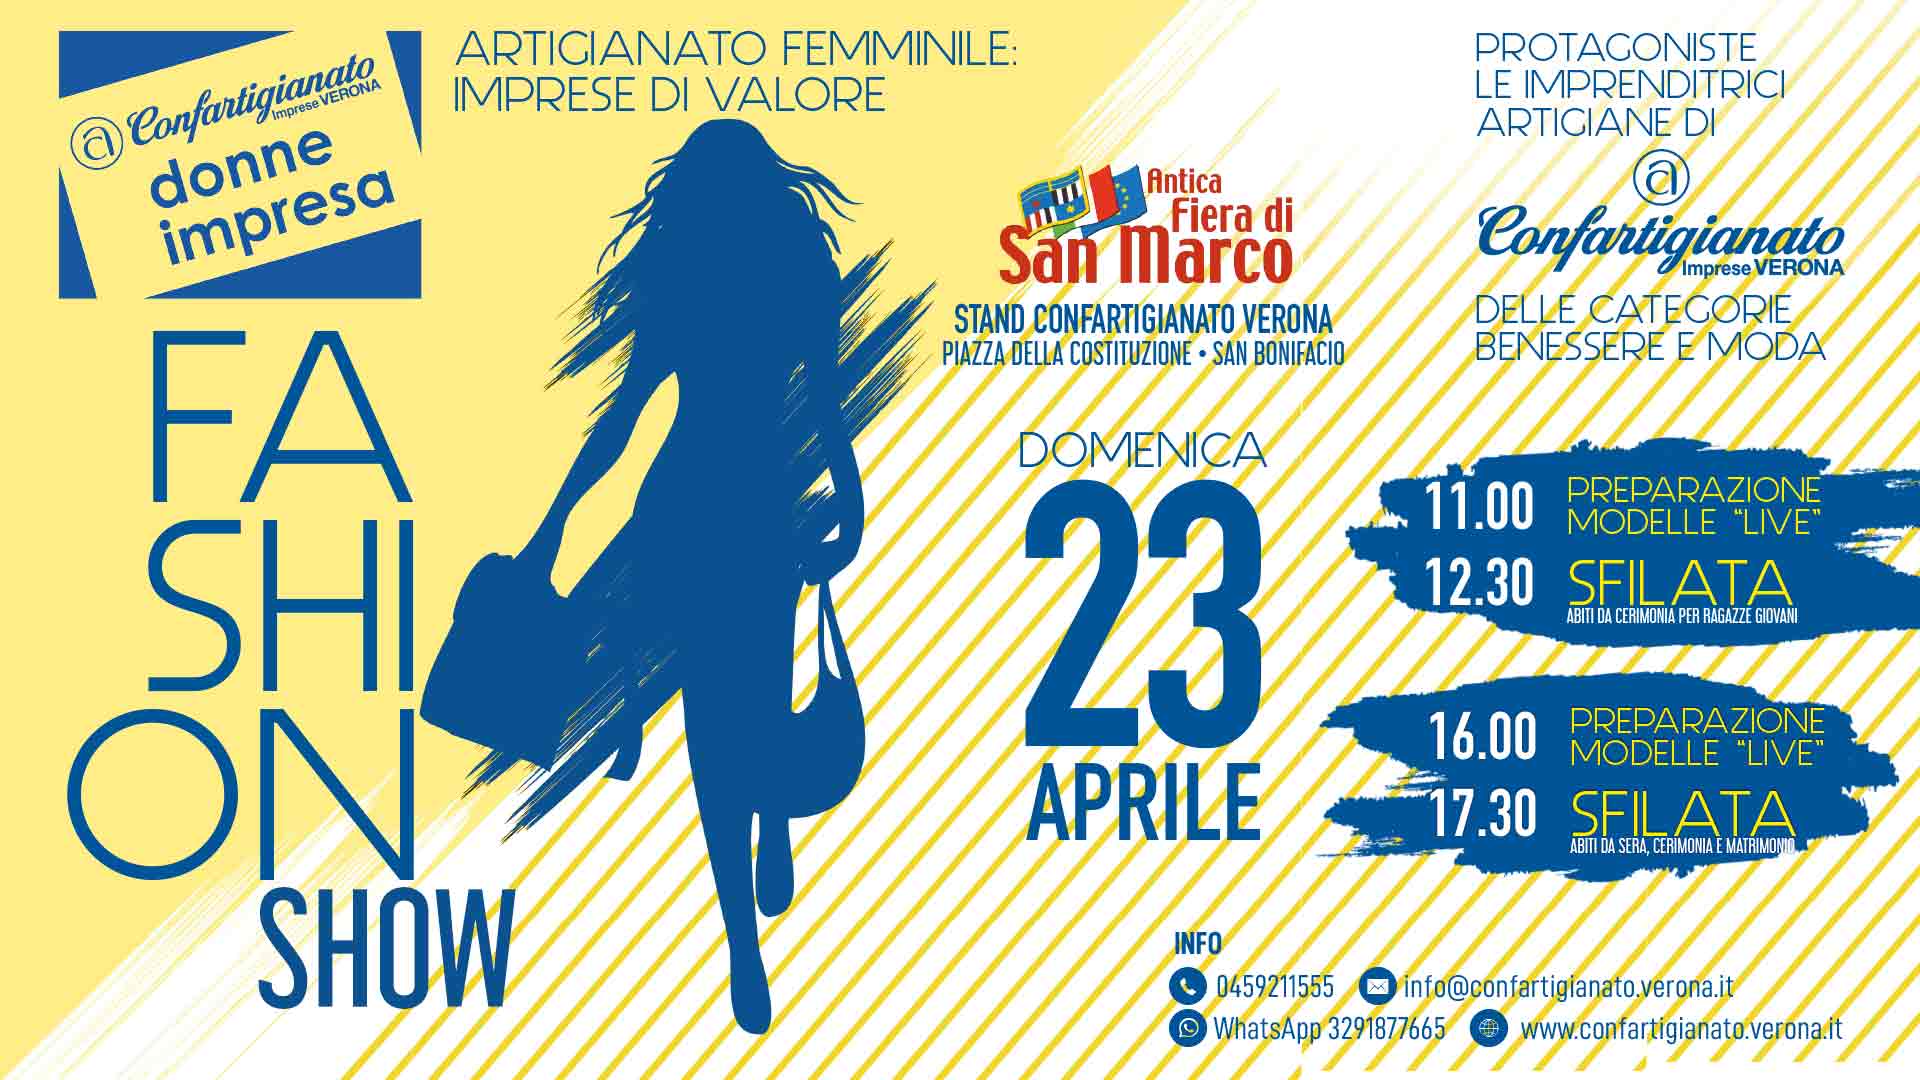 SAN BONIFACIO – Fiera di San Marco, domenica 23 aprile, giornata dedicata alle Donne di Confartigianato: due fashion show con le artigiane del Benessere e della Moda